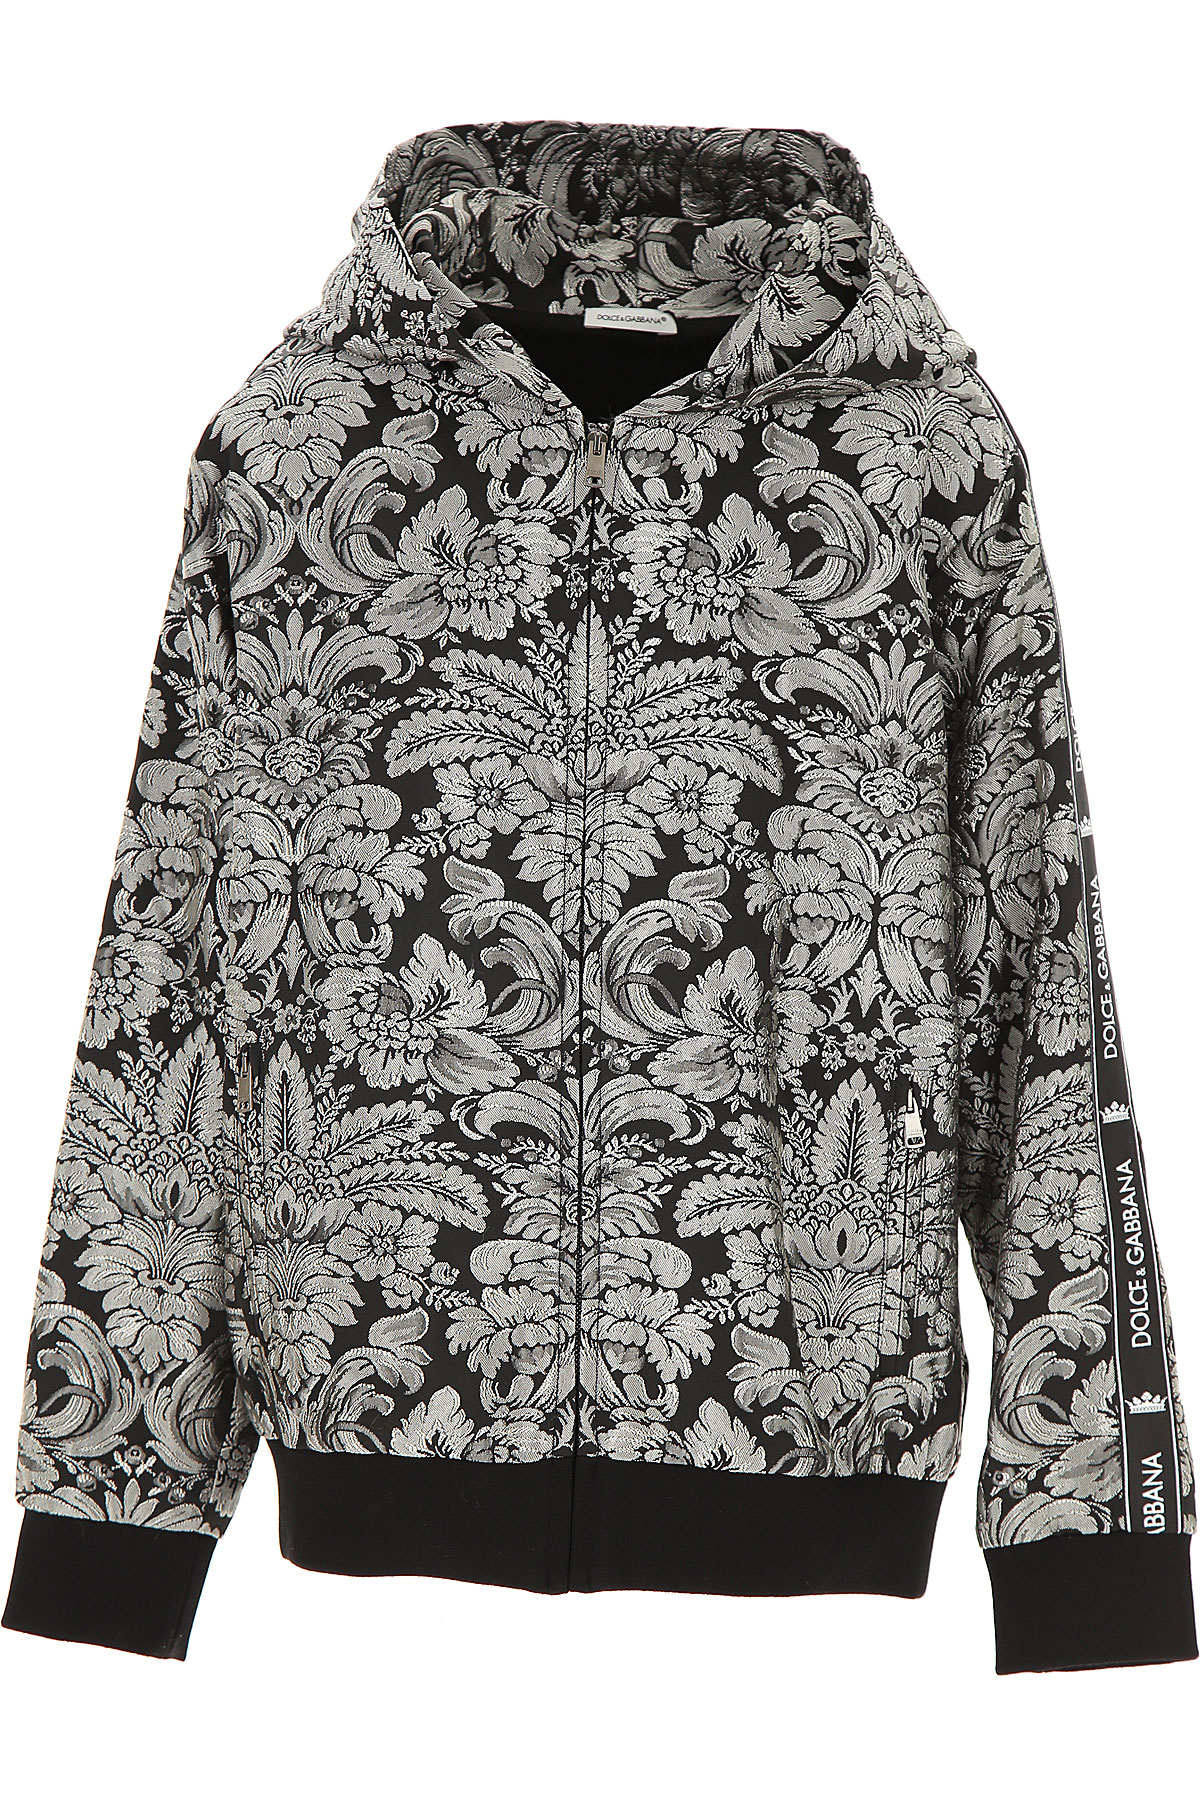 Dolce & Gabbana Kinder Sweatshirt & Kapuzenpullover für Jungen Günstig im Sale, Silbergrau, Polyester, 2017, 10Y 12Y 8Y